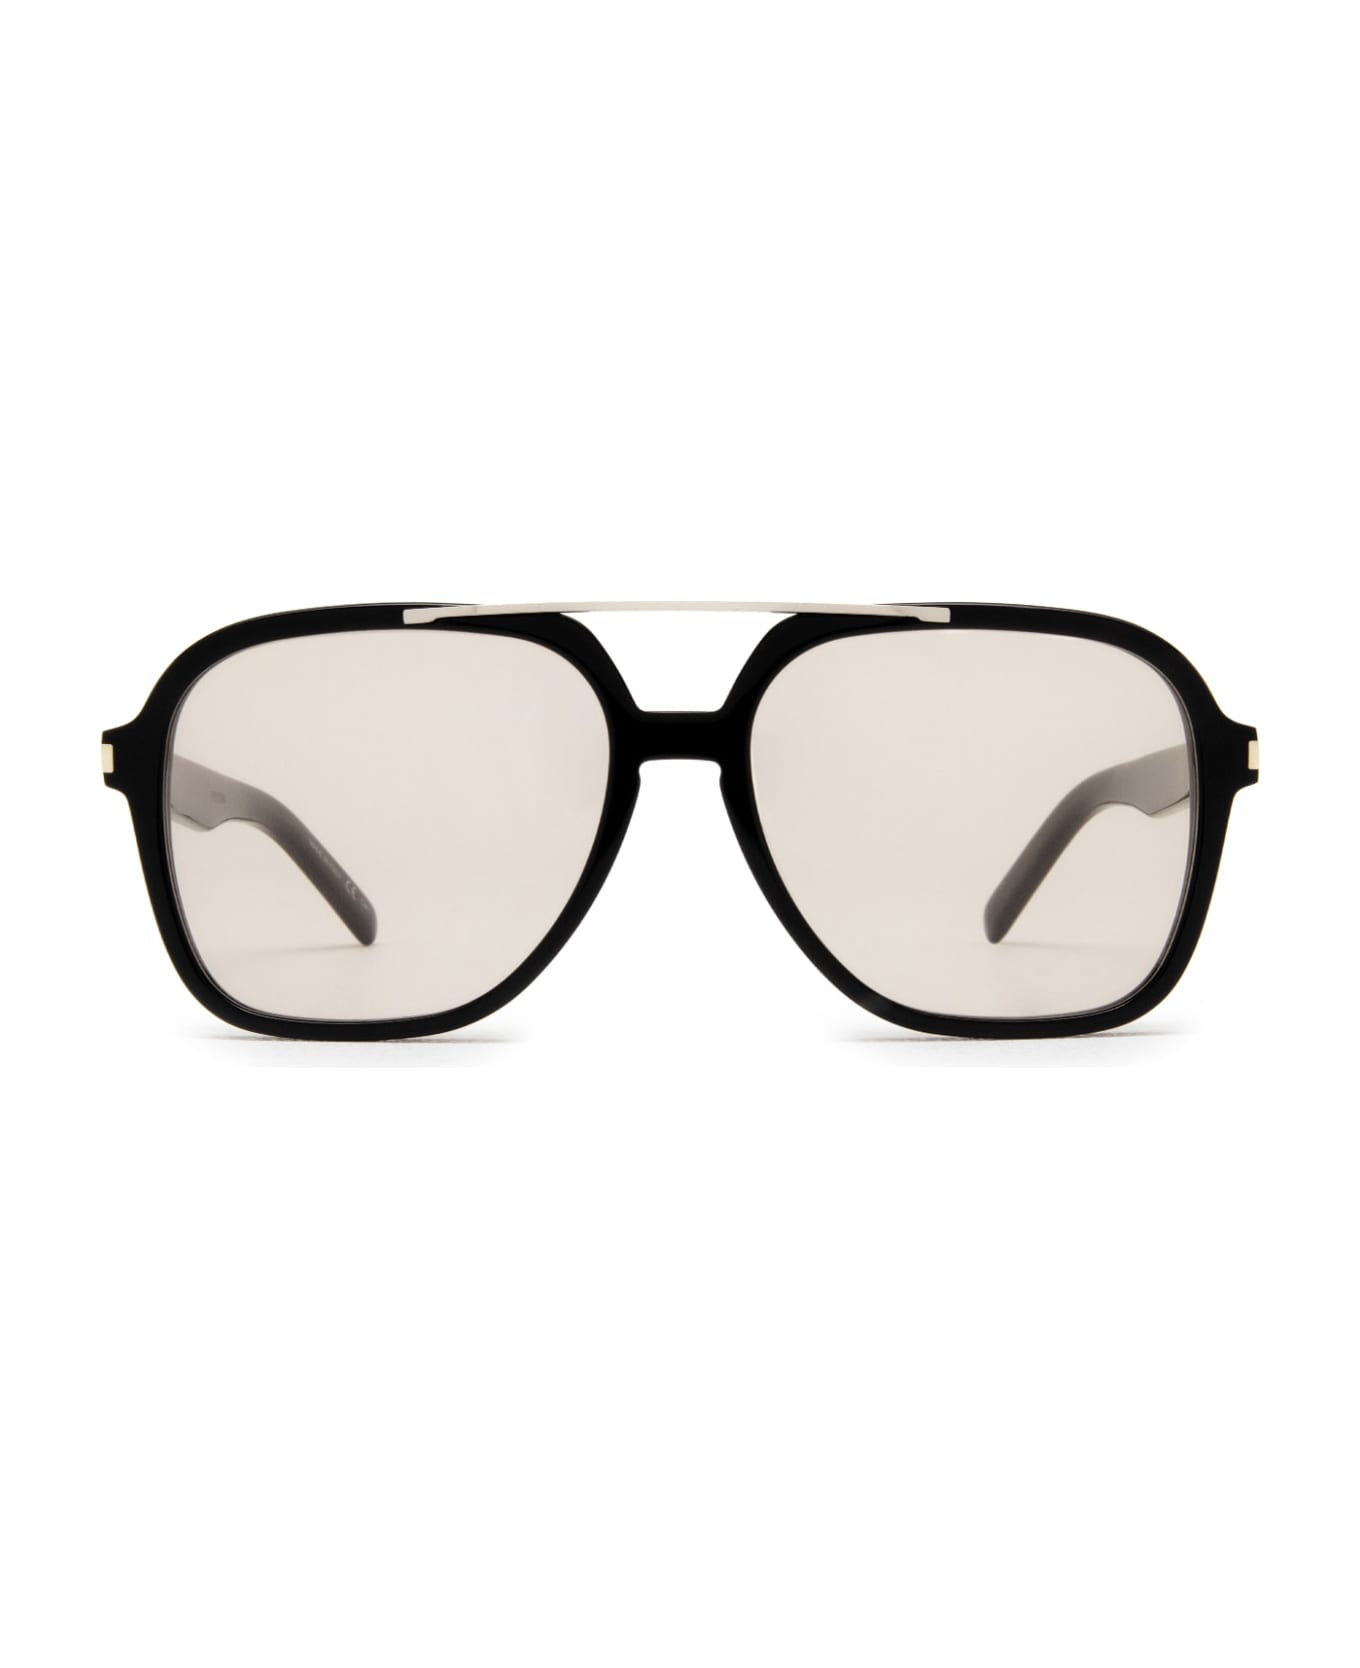 Saint Laurent Eyewear Sl 545 Black Sunglasses - Black サングラス